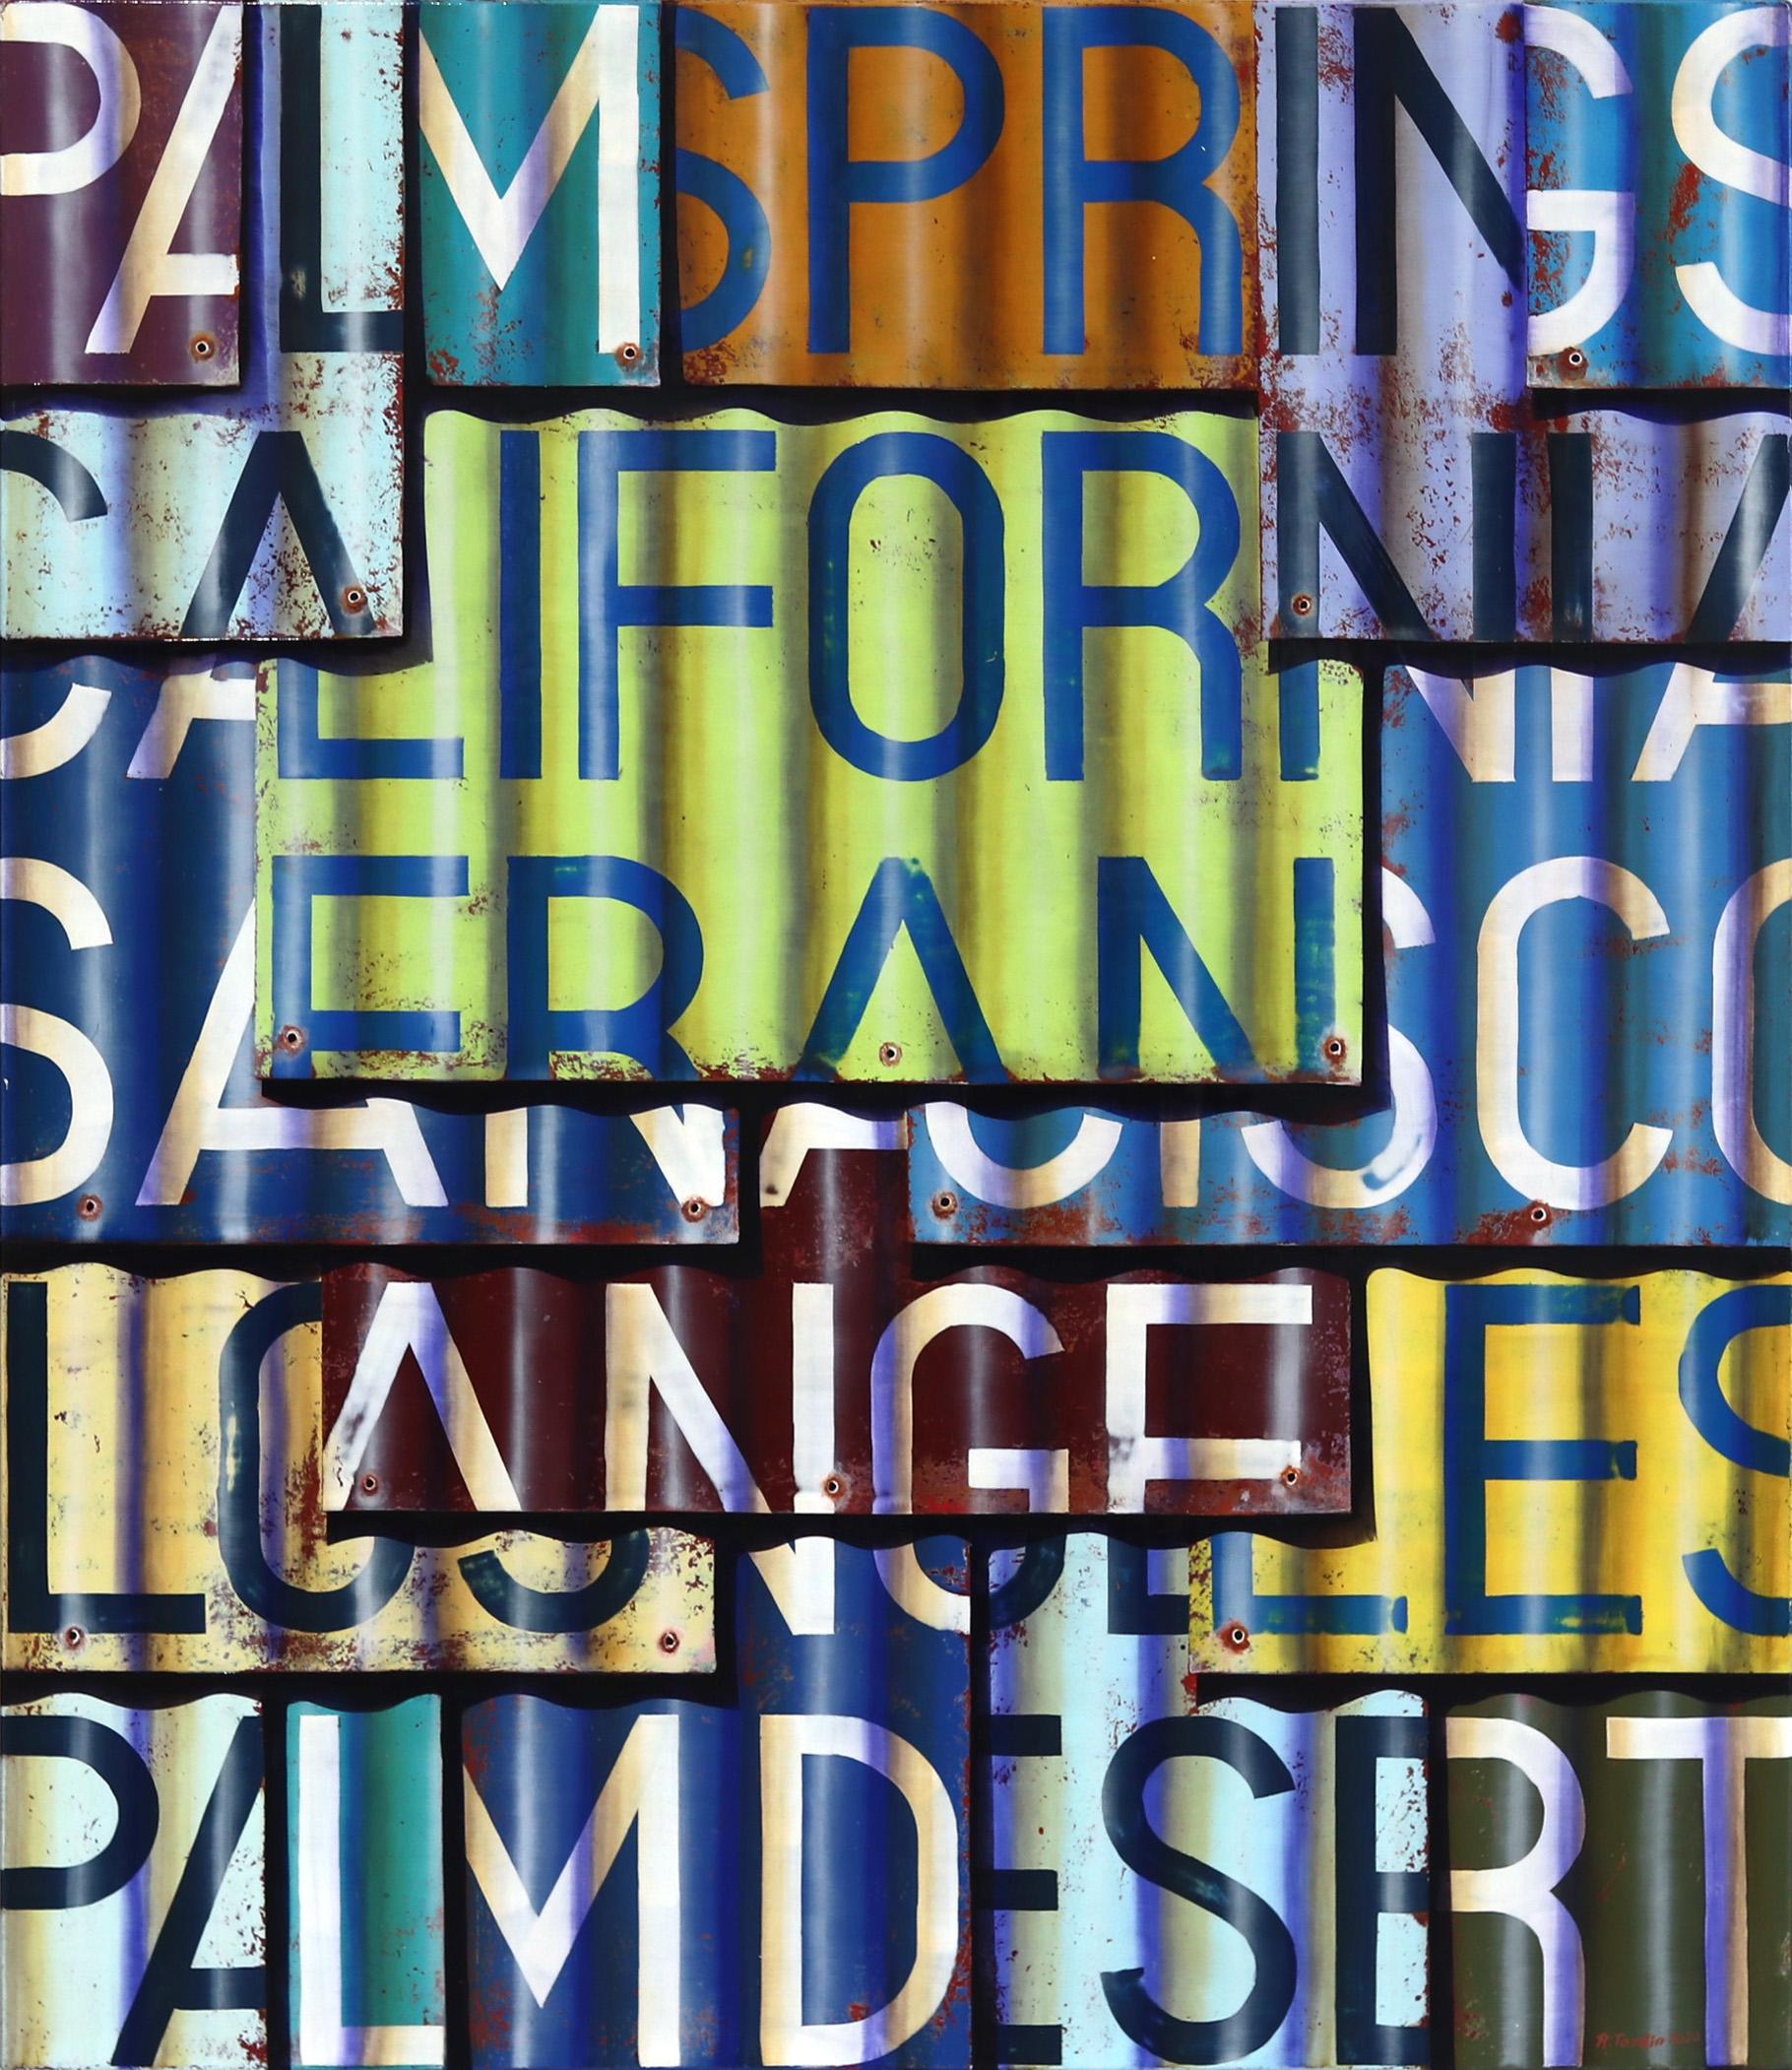 CALIFORNIA – Fotorealistisches Gemälde in Öl und Emaille auf Leinwand – Mixed Media Art von Ross Tamlin